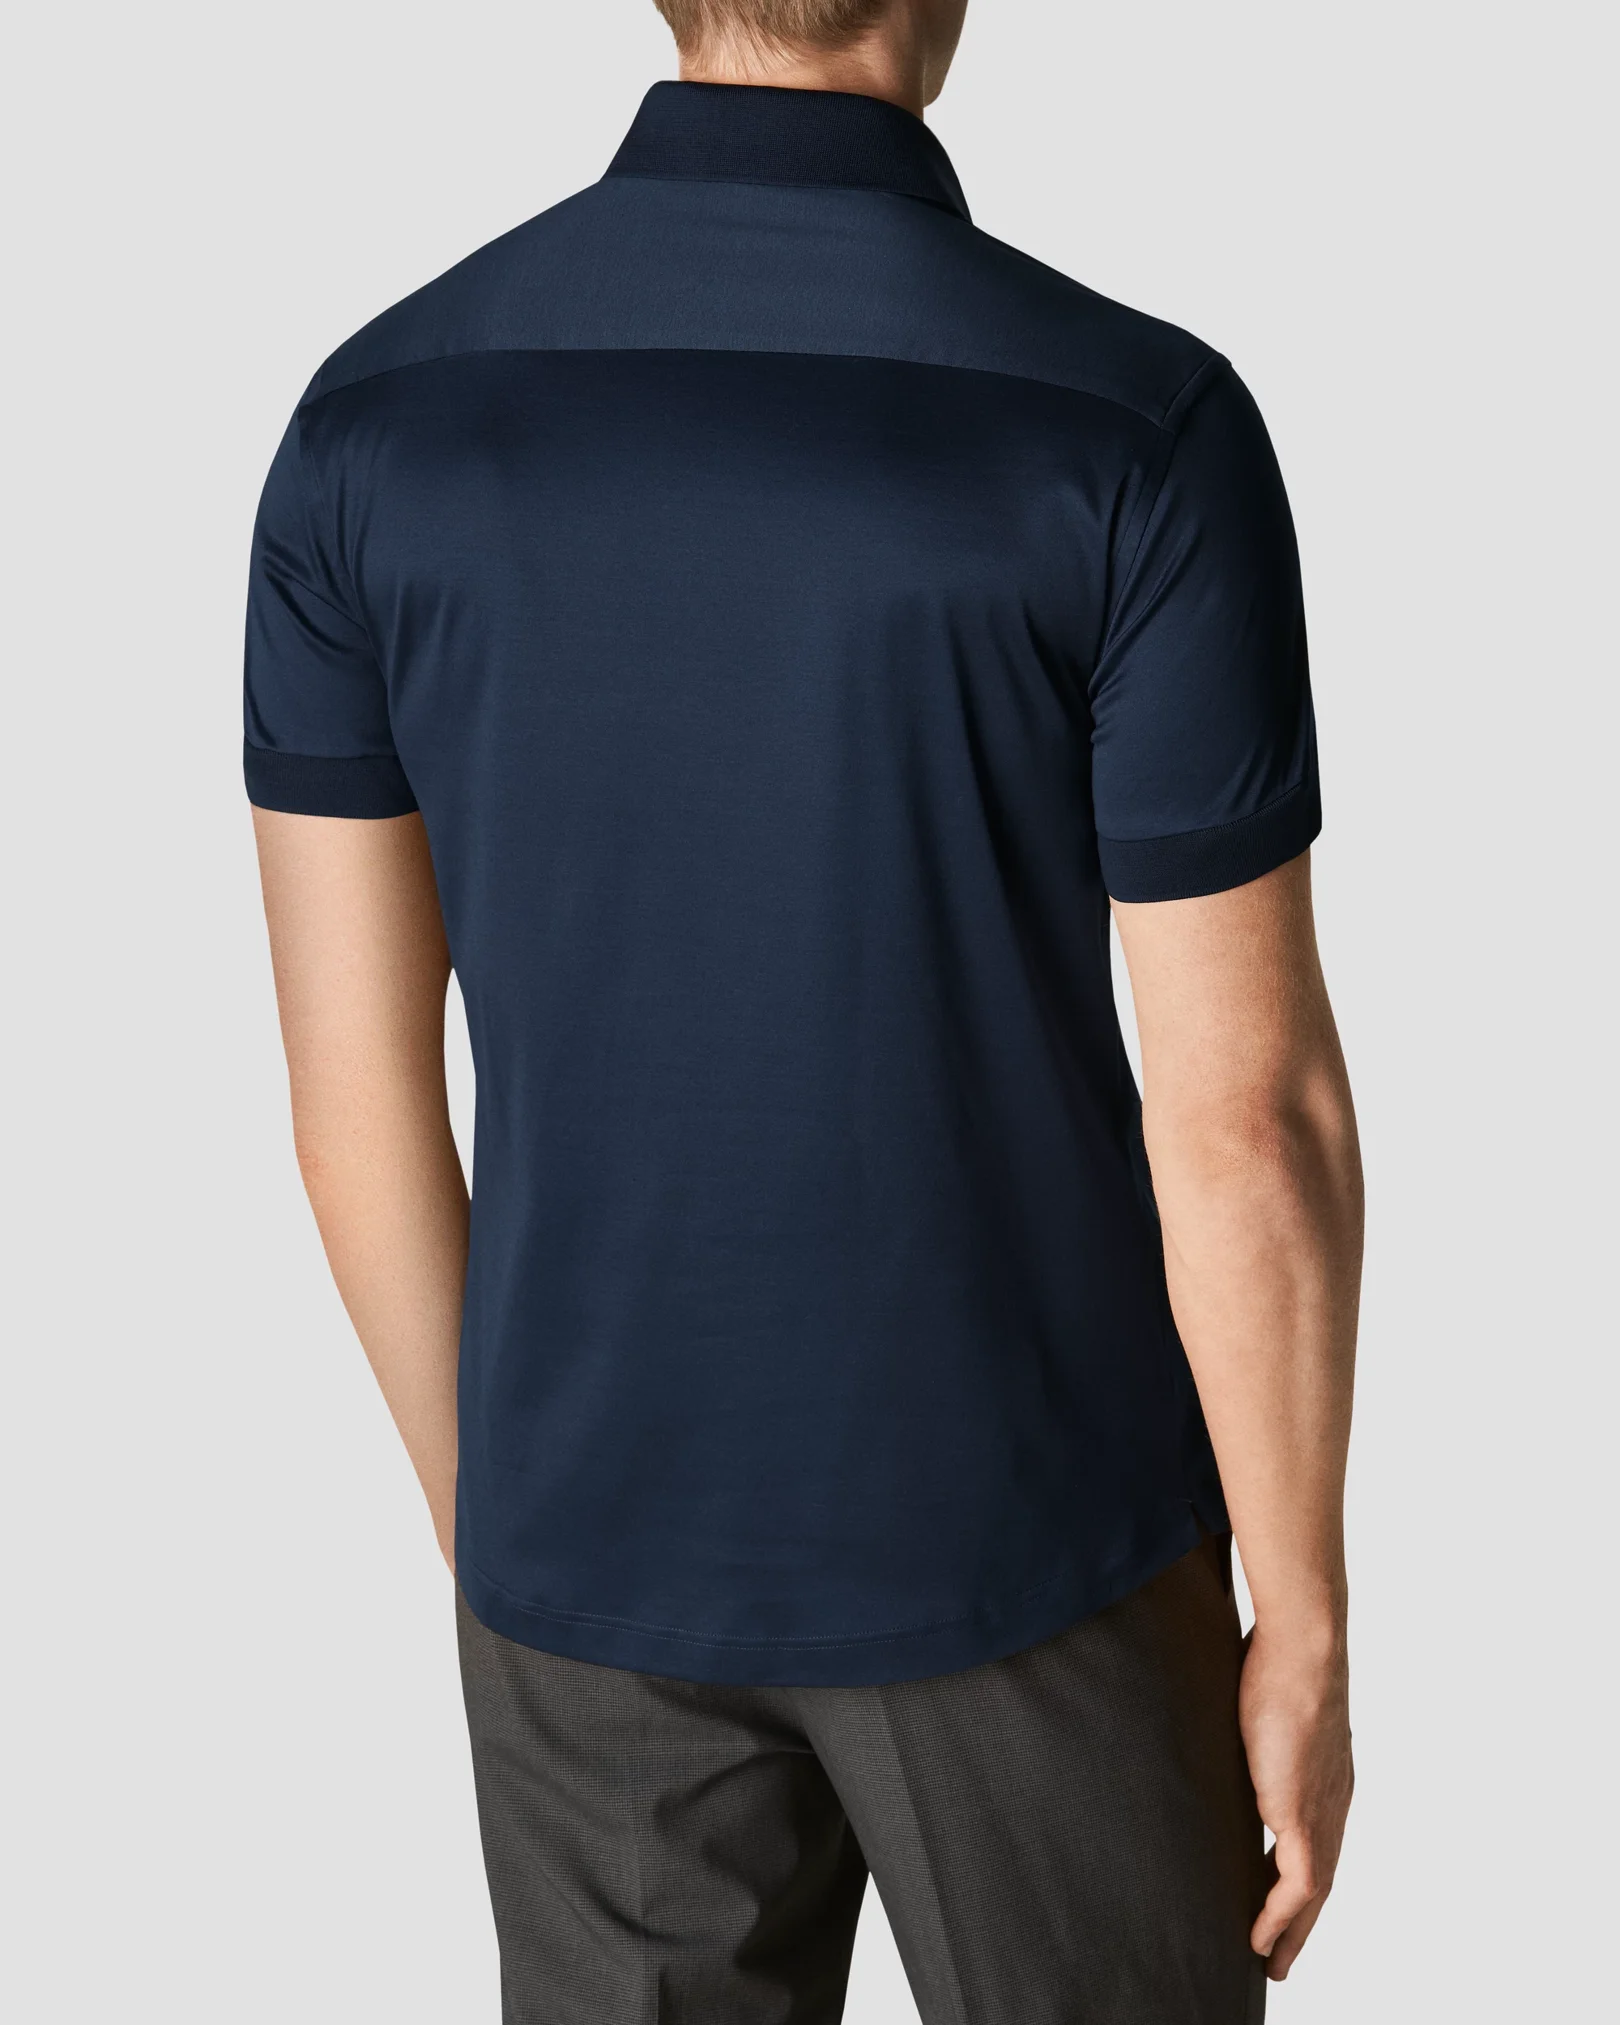 Navy blue Jersey Shirt - Eton